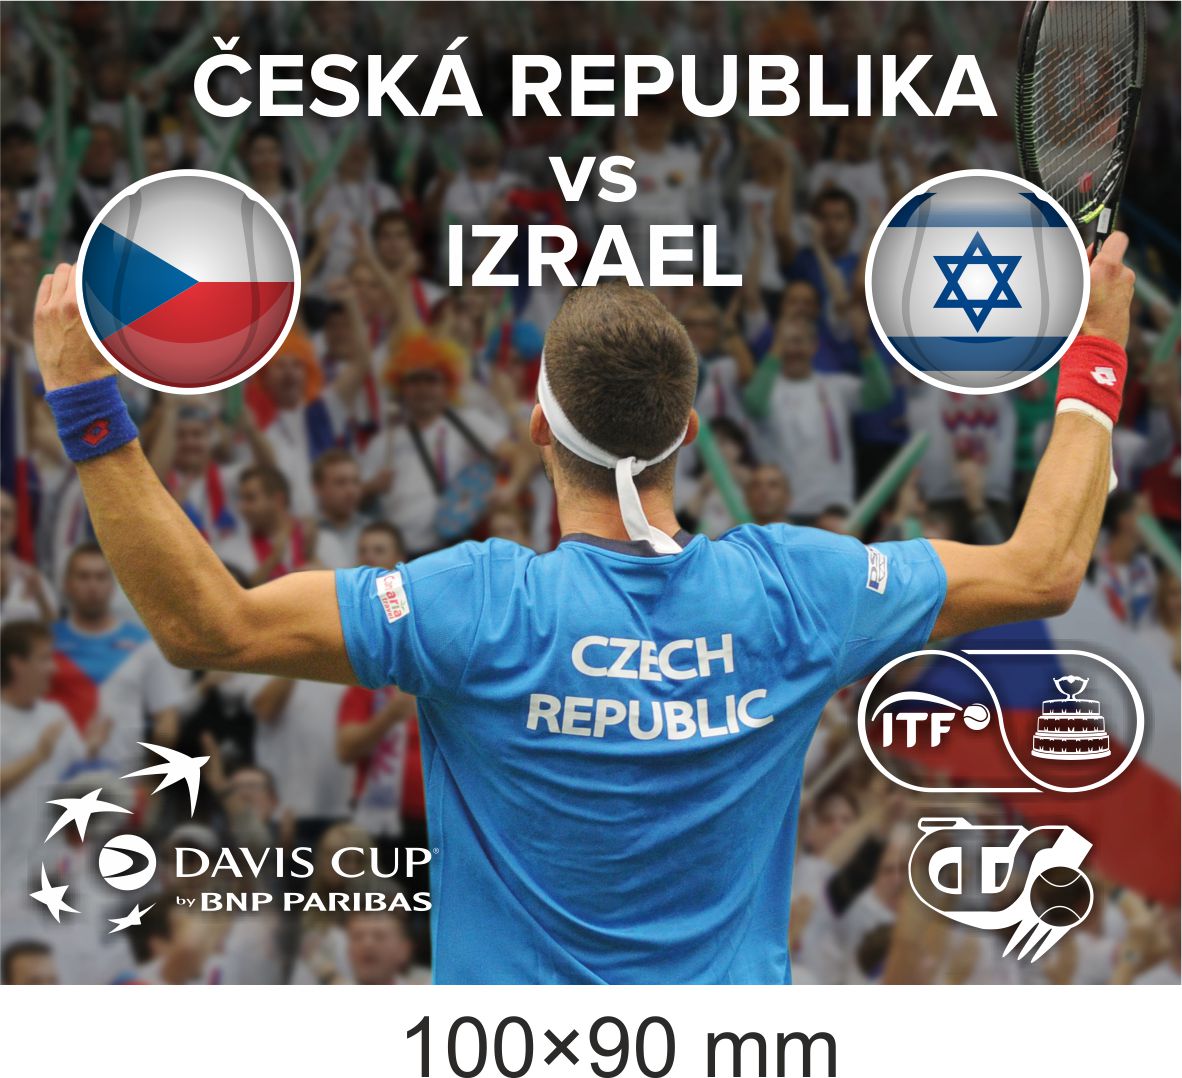 Samolepka Davis cup 2018, CZE vs. ISR